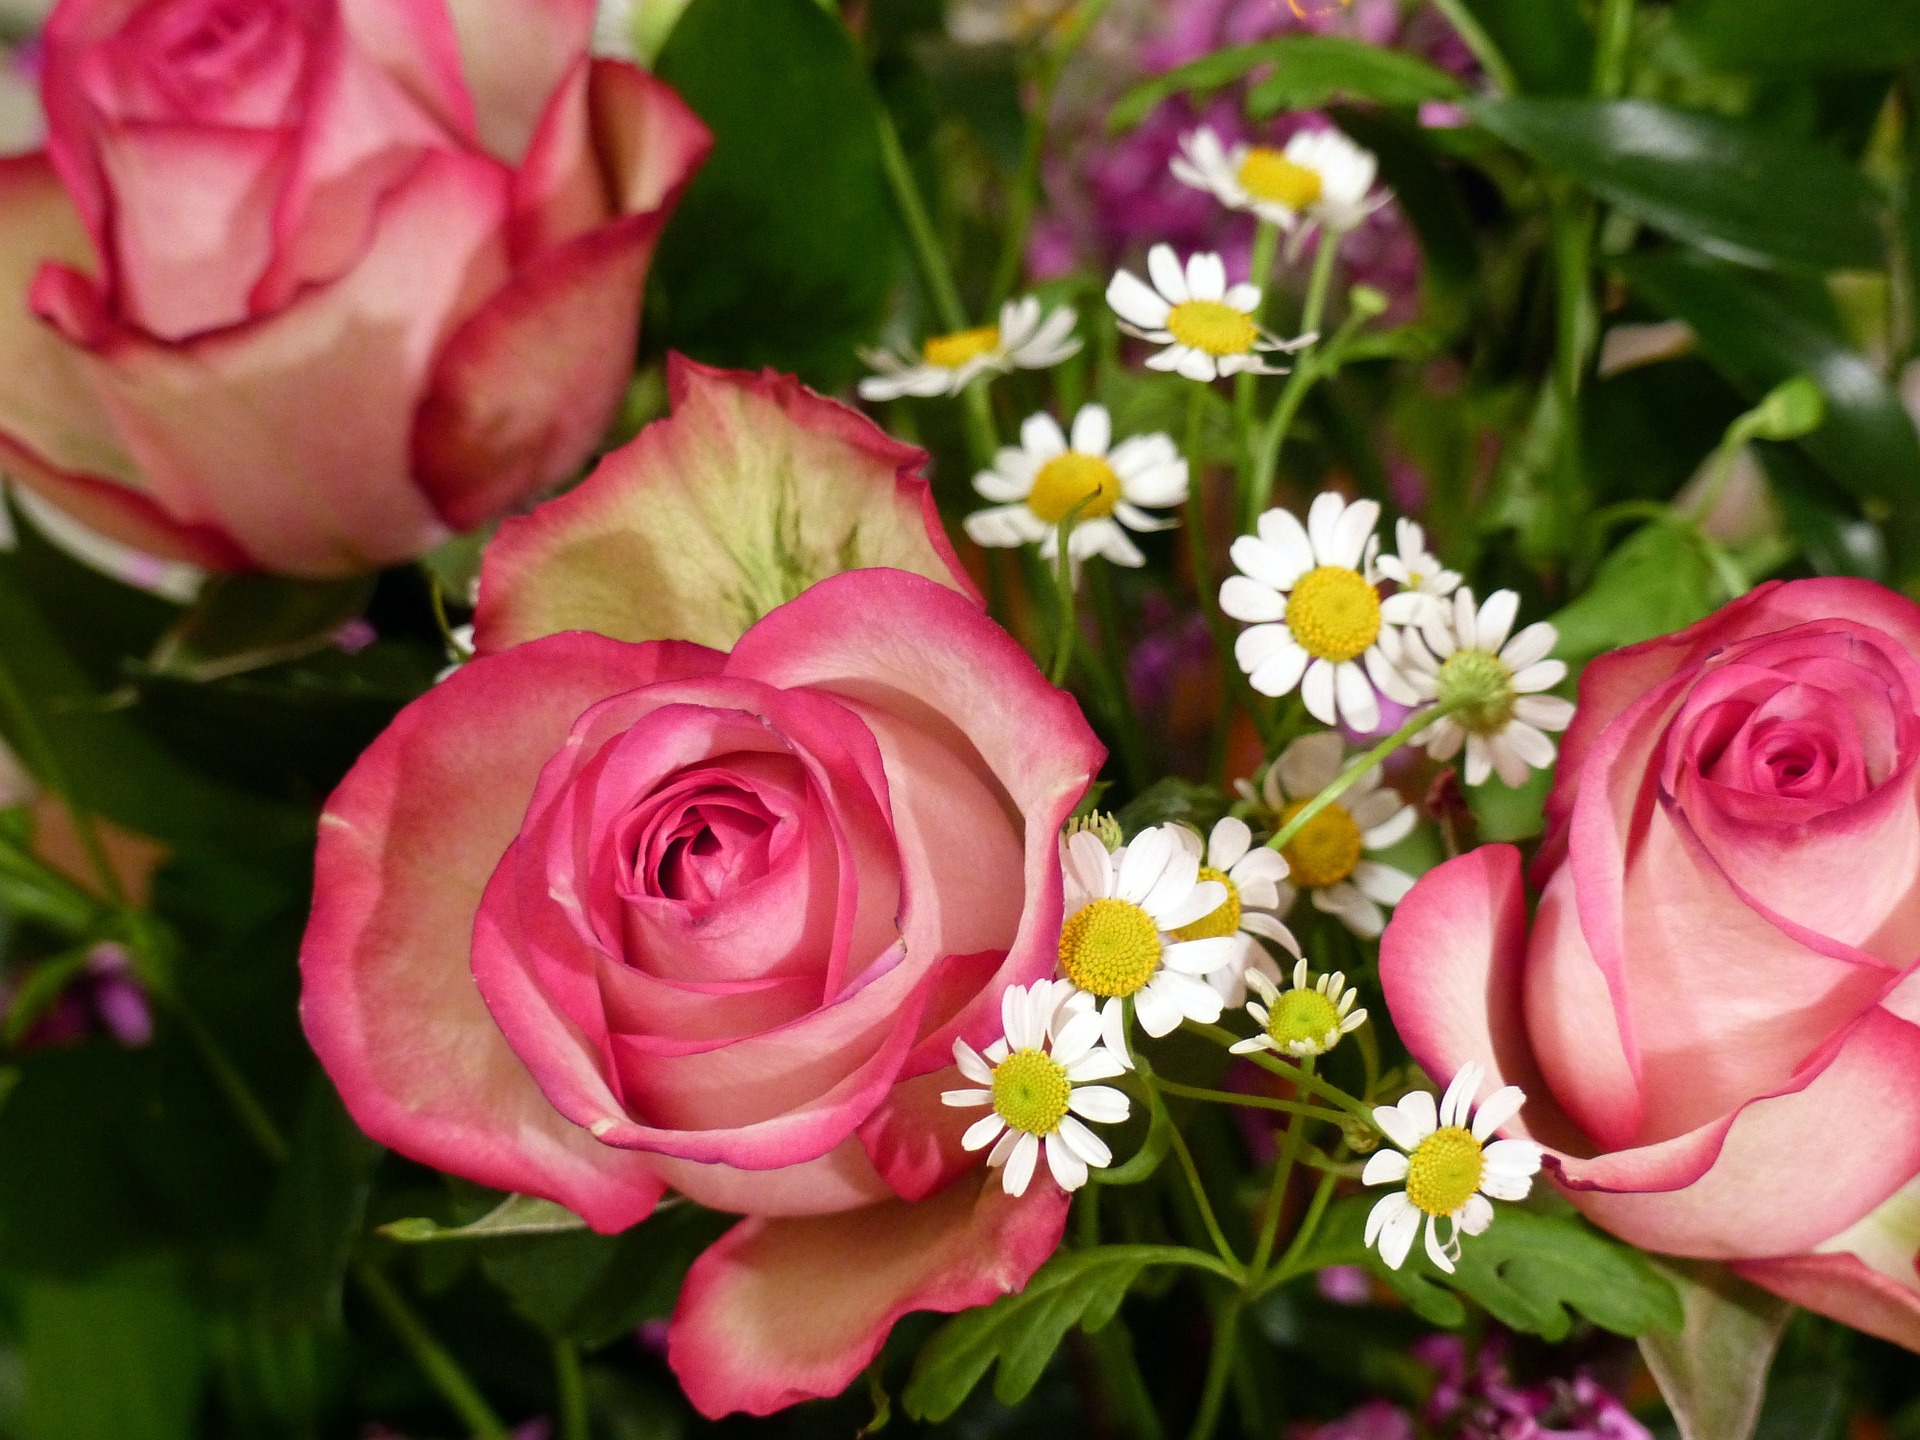 Roses Ecuador | Discover Your South America Blog